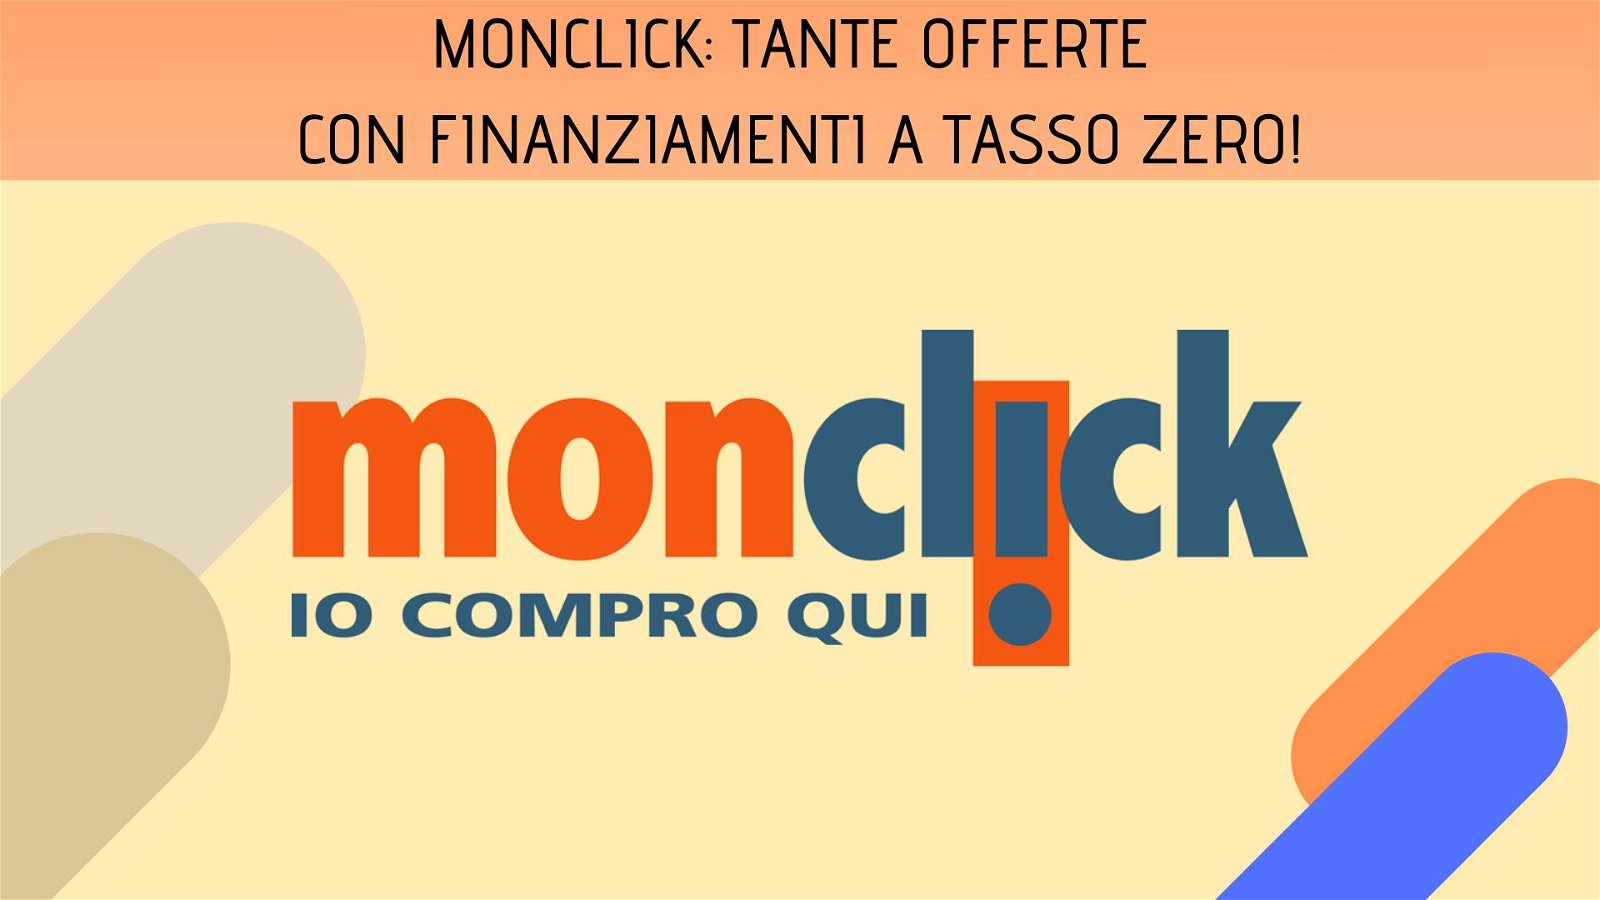 Immagine di Monclick: fino al 50% di sconto e finanziamenti a tasso zero!